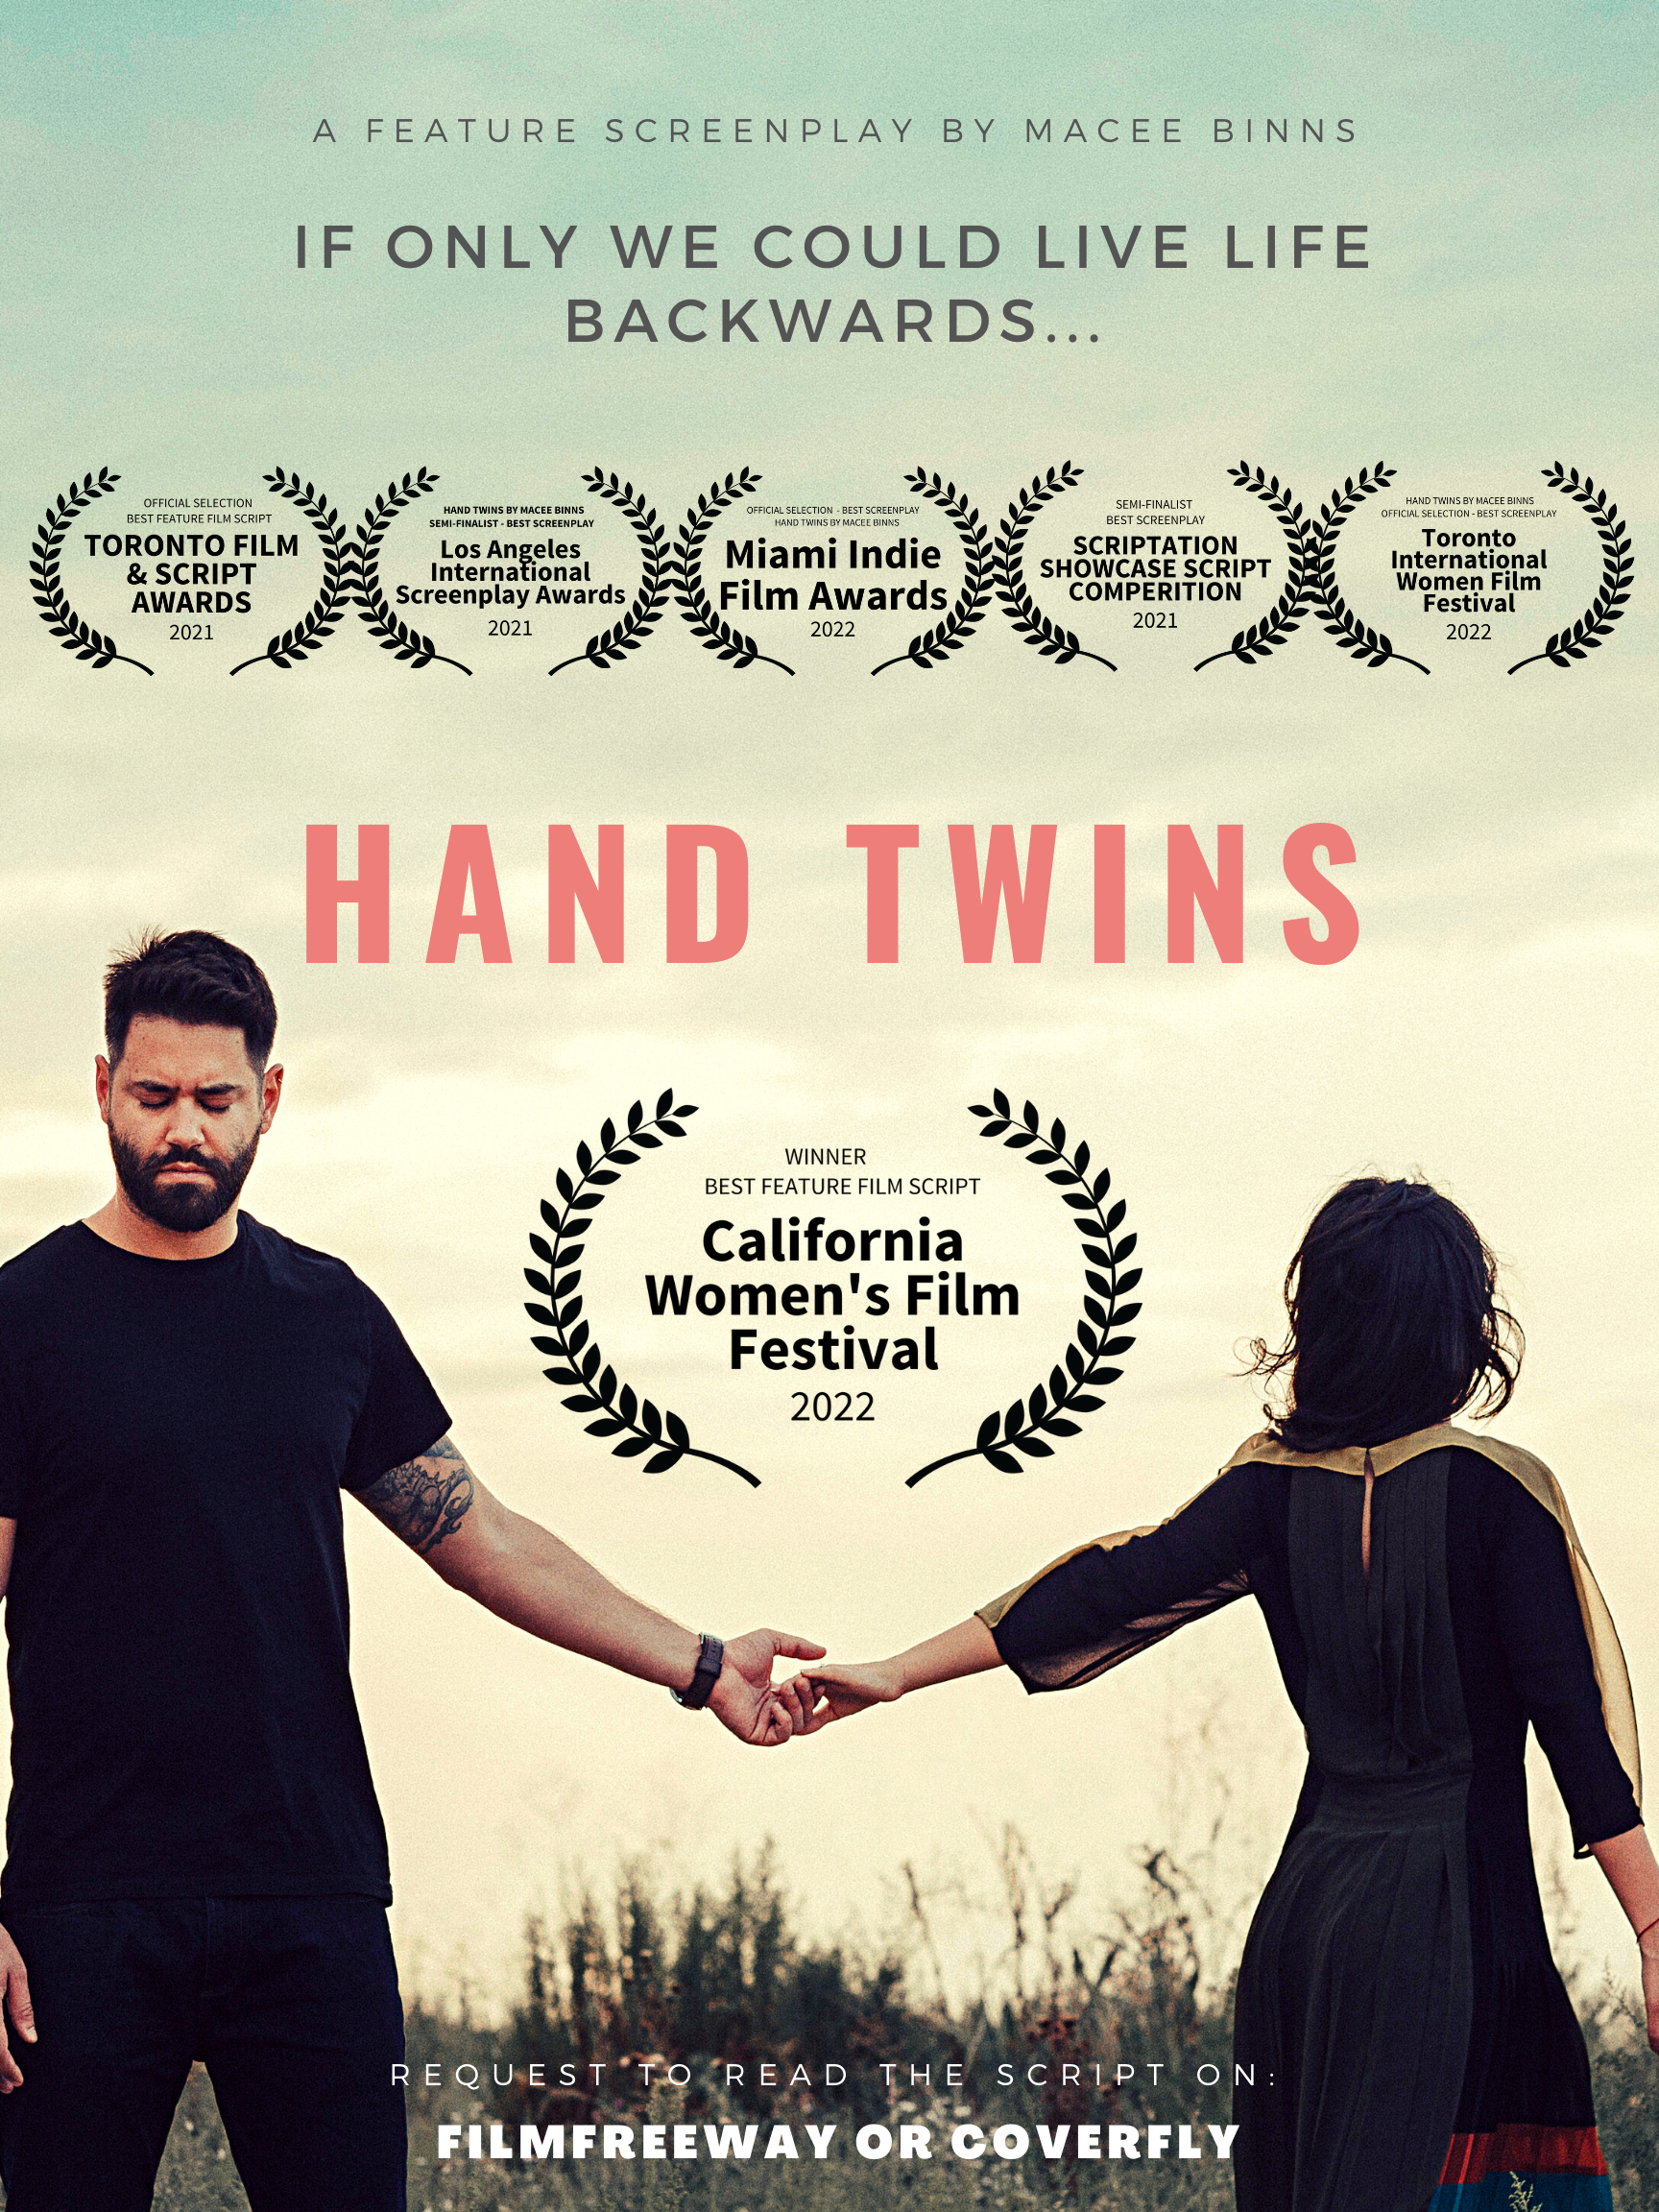 HAND TWINS